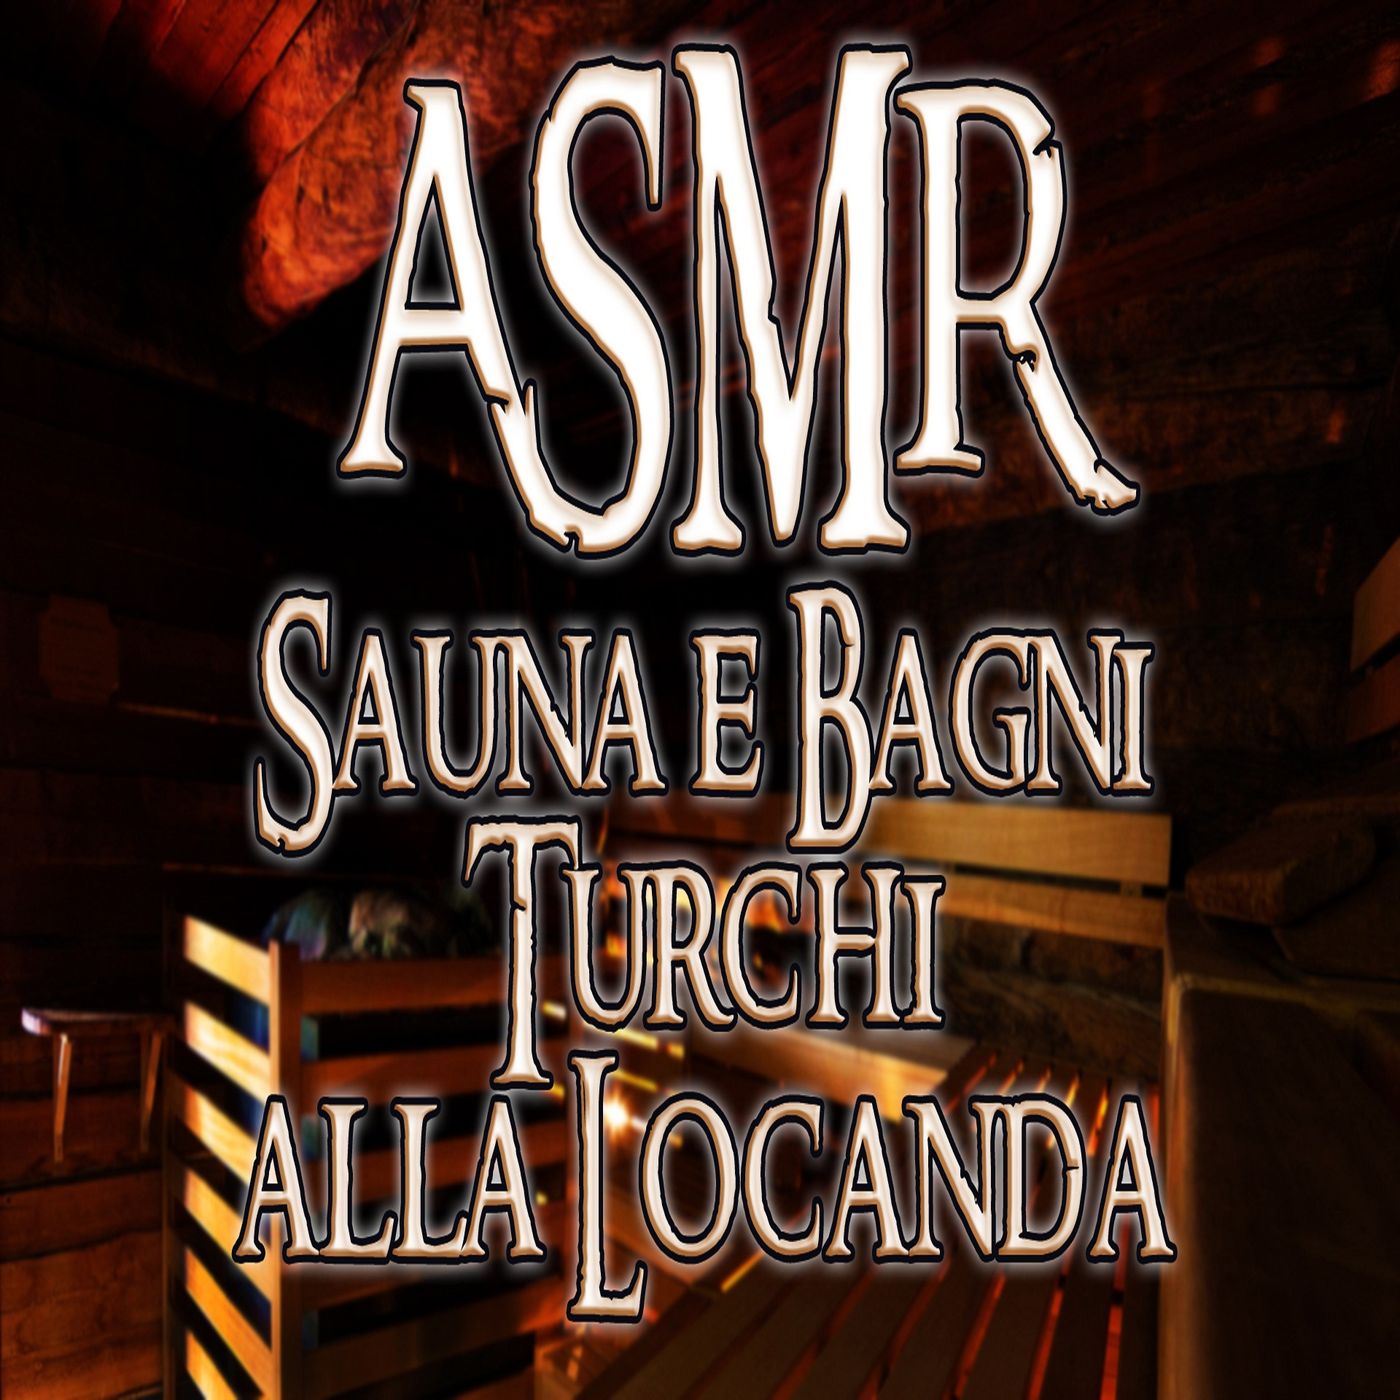 ASMR - Sauna e Bagni turchi alla Locanda